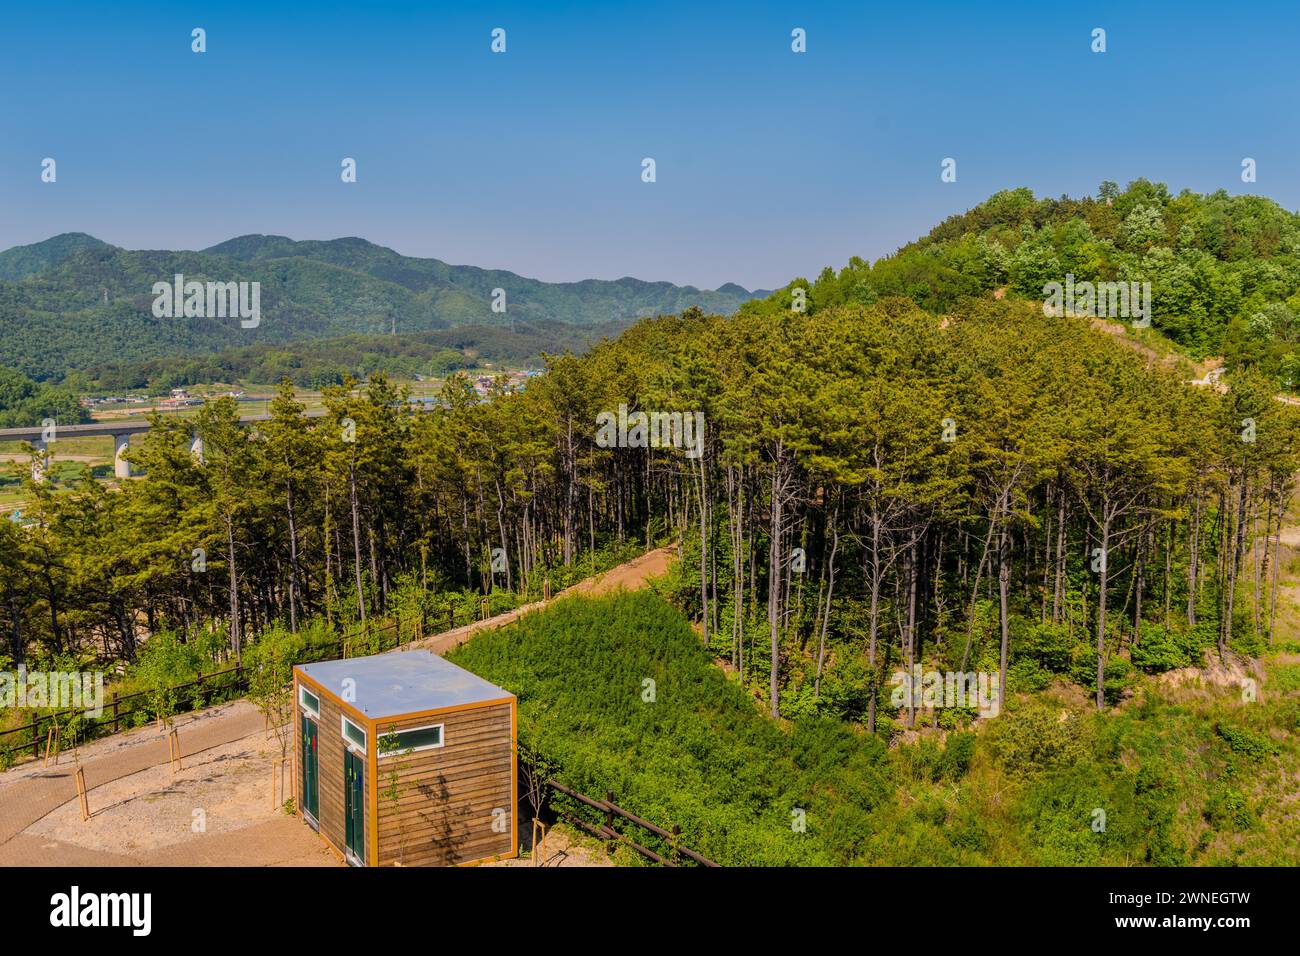 La cima dei bagni pubblici in ghiaia del parco forestale di montagna è stata presa dalla torre di osservazione in Corea del Sud Foto Stock